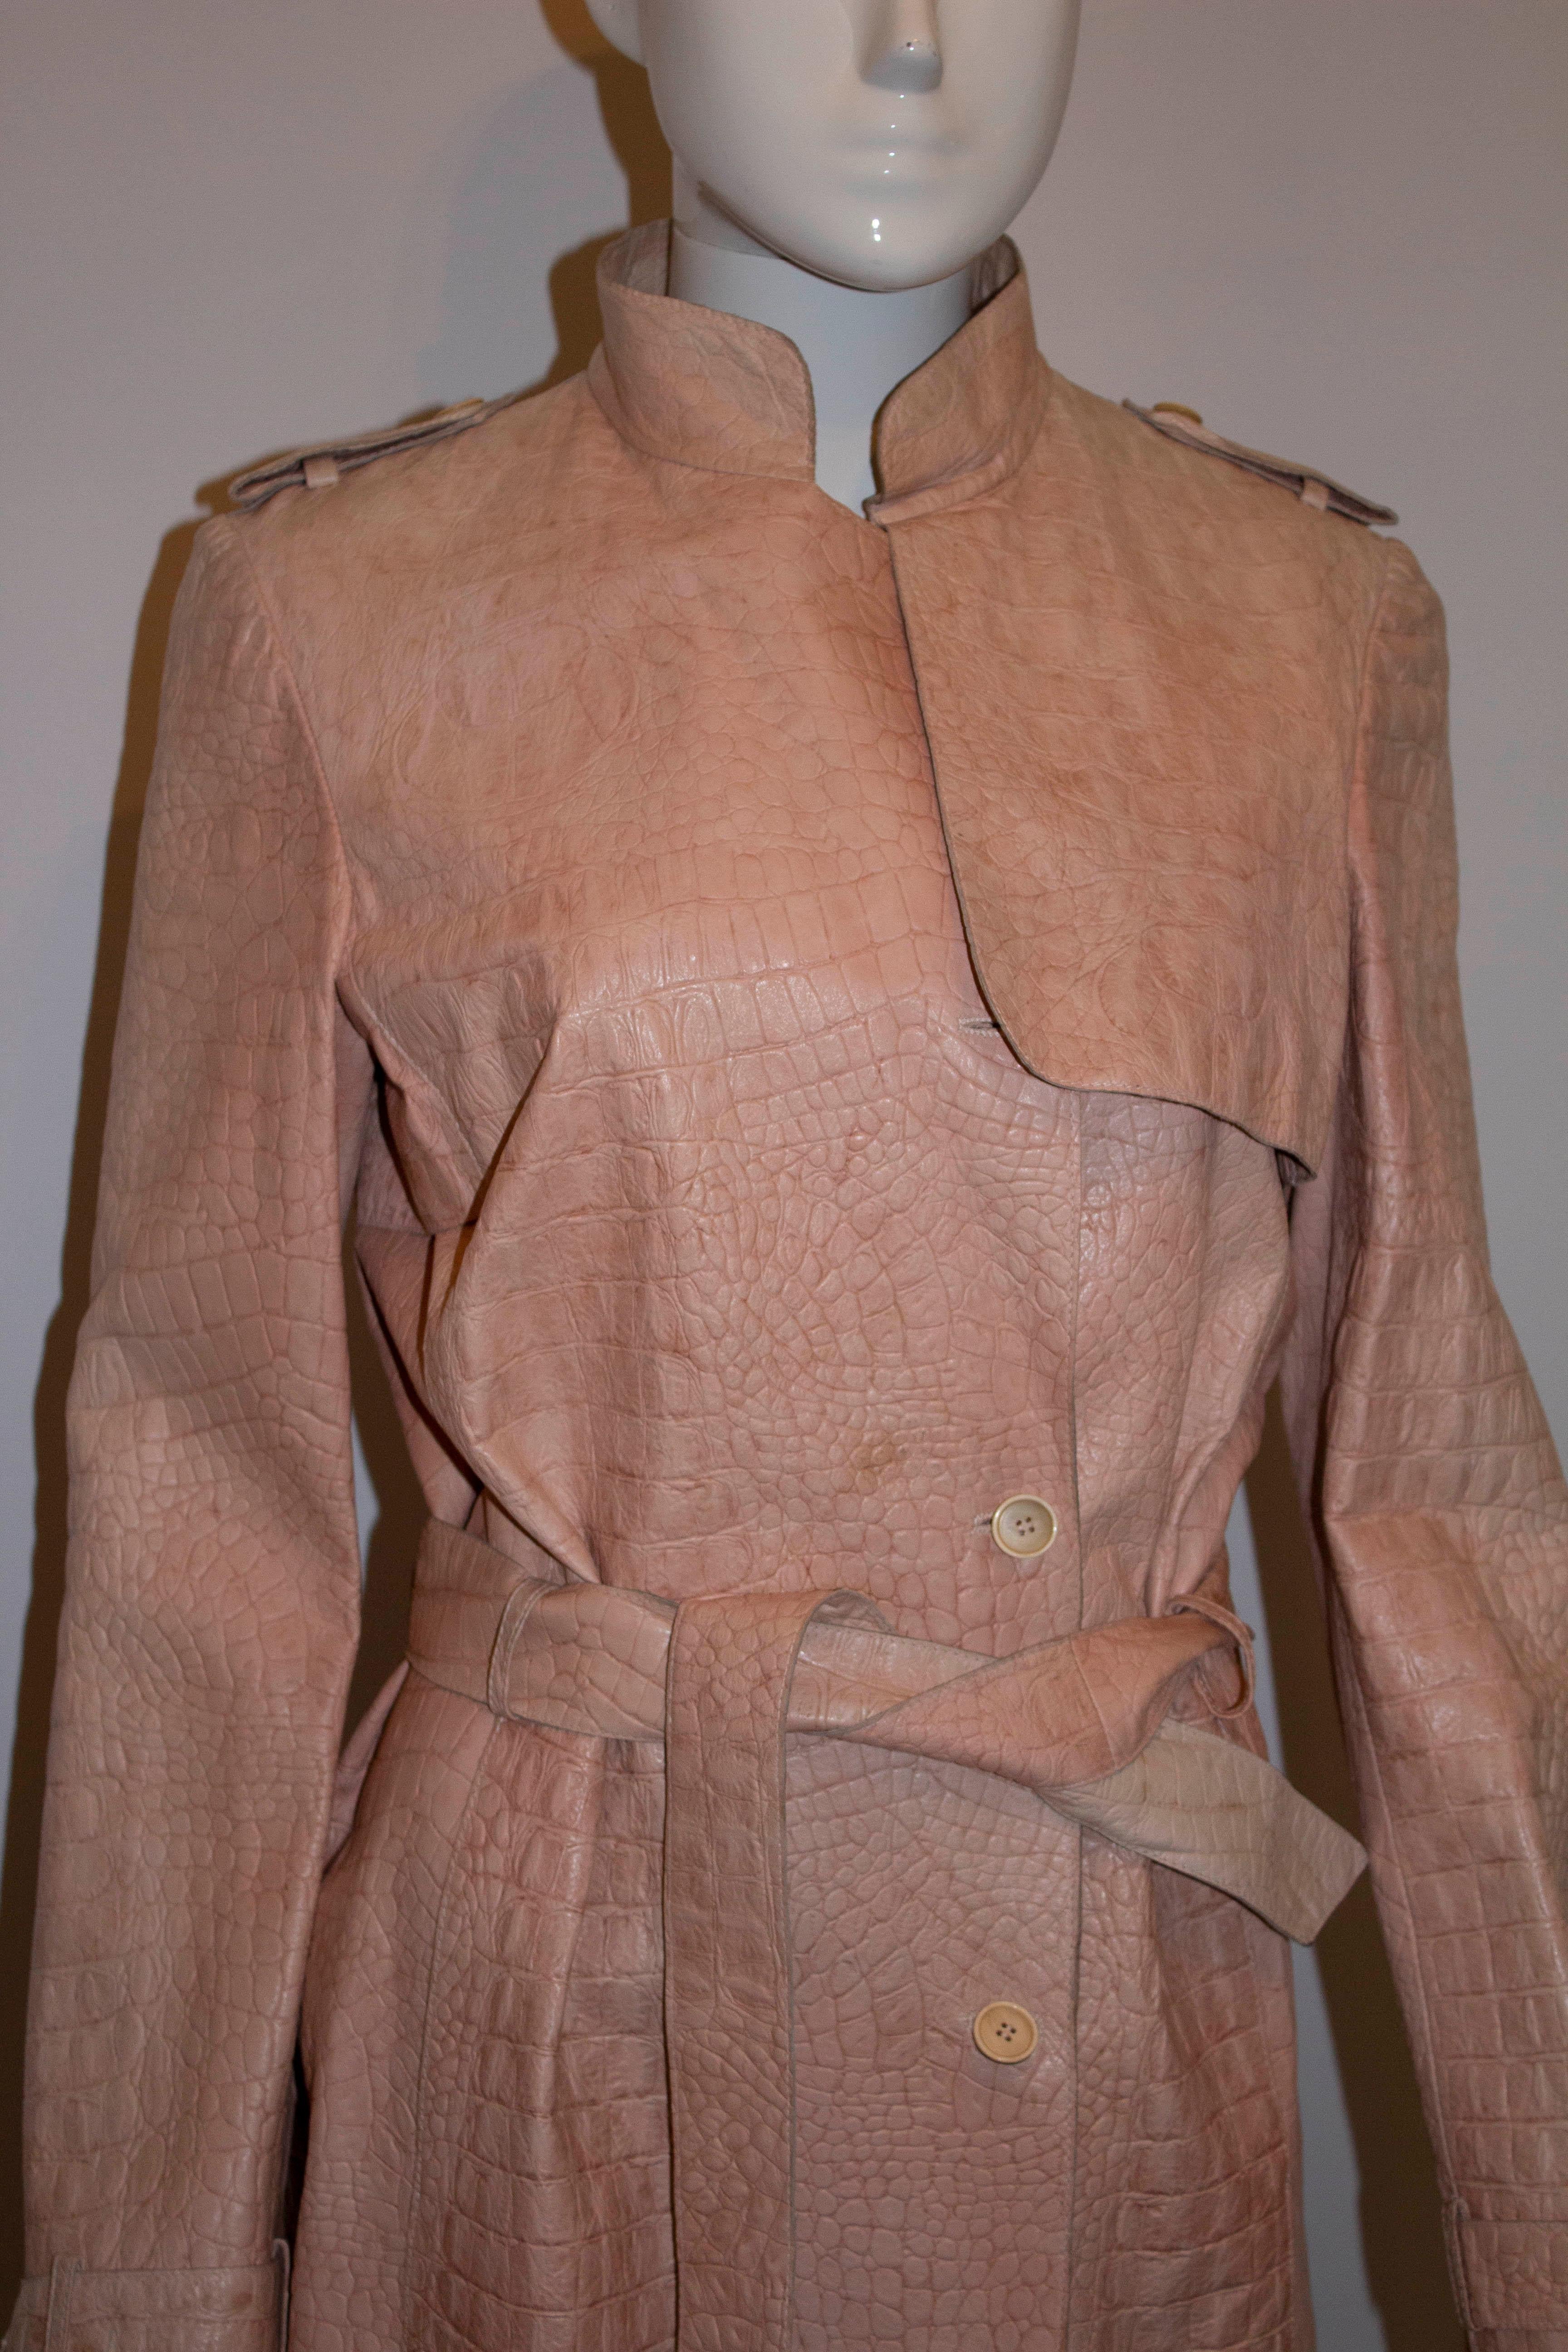 Ein schicker Leder-Trenchcoat für Frühjahr/Sommer von Pollini.  Der Mantel aus hübschem rosa geprägtem Leder mit Kroko-Effekt ist vollständig gefüttert und hat einen Ledergürtel.  Maße: Büste 36'', Taille 29'', Länge